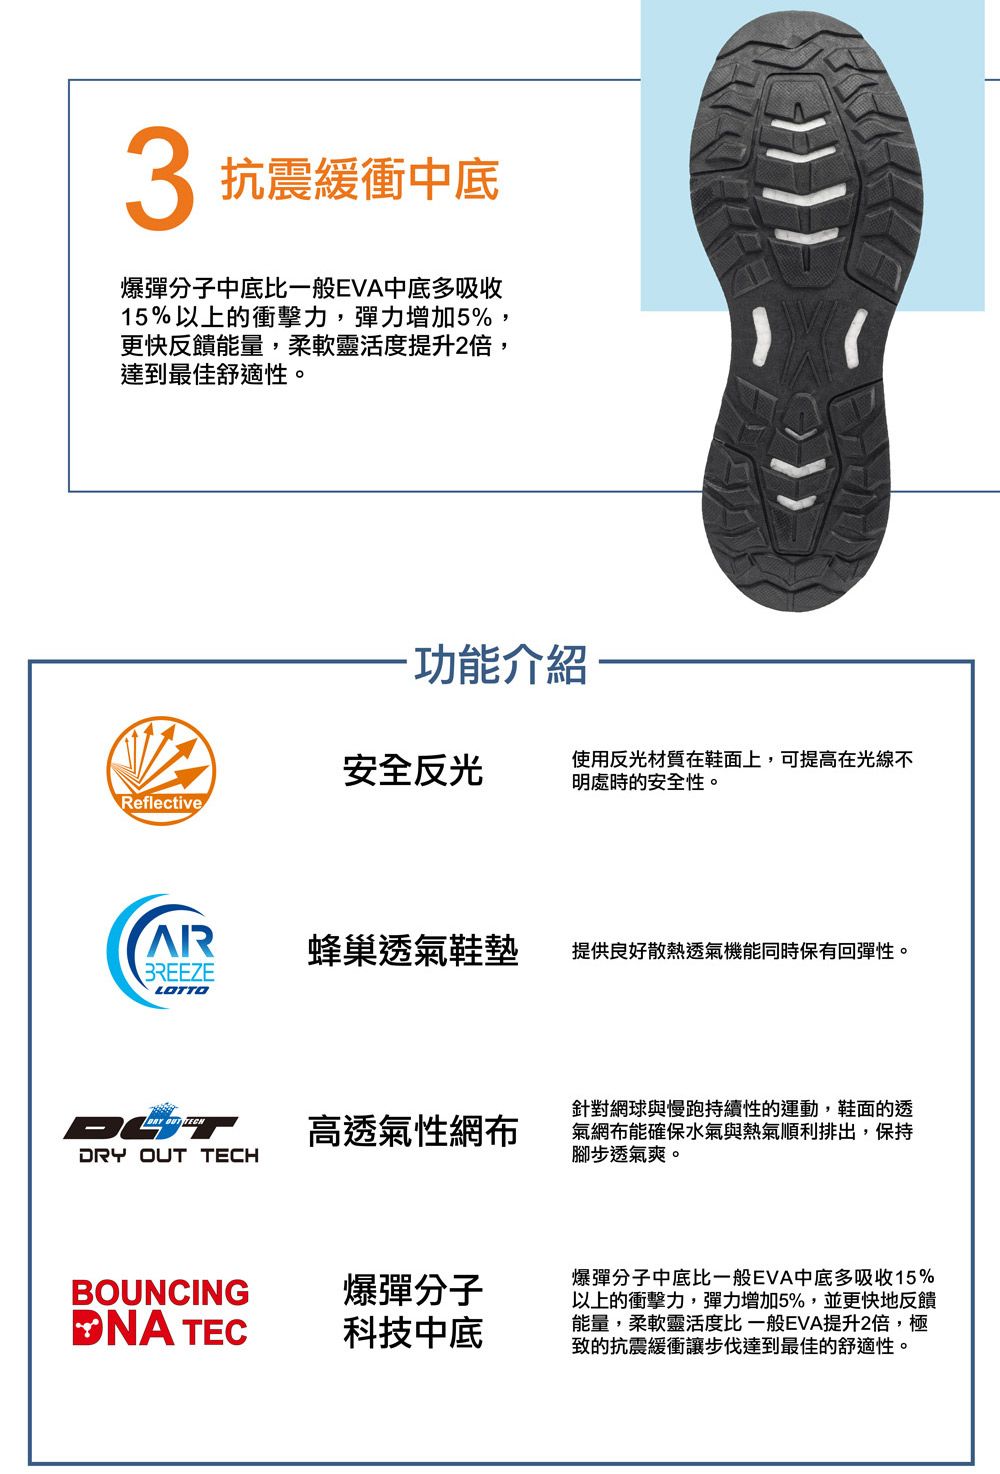 3 抗震緩衝中底爆彈分子中底比一般EVA中底多吸收15%以上的衝擊力,彈力增加5%,更快反饋能量,柔軟靈活度提升2倍,達到最佳舒適性。功能介紹安全反光使用反光材質在鞋面上,可提高在光線不明處時的安全性。ReflectiveAR蜂巢透氣鞋墊提供良好散熱透氣機能同時保有回彈性。BREEZELOTTO  高透氣性網布DRY OUT TECHBOUNCING爆彈分子NA TEC科技中底針對網球與慢跑持續性的運動,鞋面的透氣網布能確保水氣與熱氣順利排出,保持腳步透氣爽。爆彈分子中底比一般EVA中底多吸收15%以上的衝擊力,彈力增加5%,並更快地反饋能量,柔軟靈活度比一般EVA提升2倍,極致的抗震緩衝讓步伐達到最佳的舒適性。